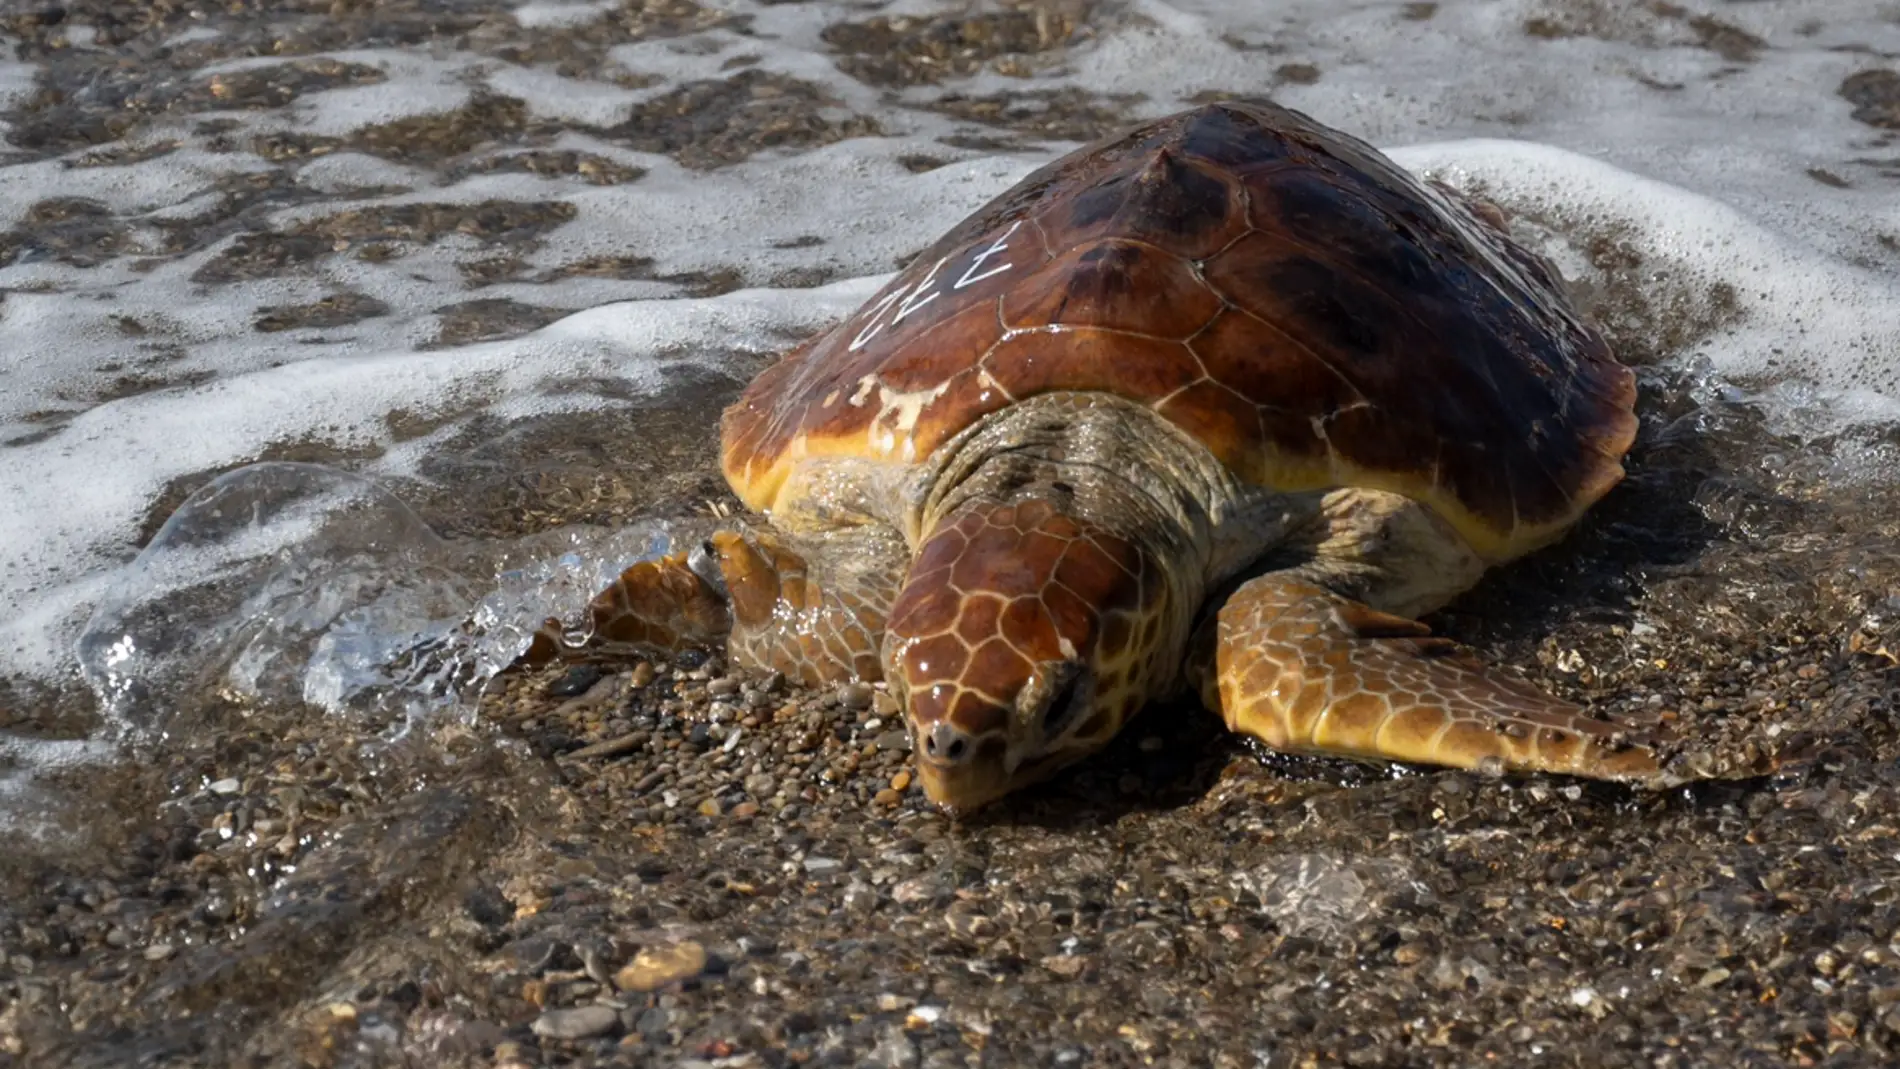  Sueltan al mar en Almassora a la tortuga “Benafelí”, recuperada en el Oceanogràfic de Valencia